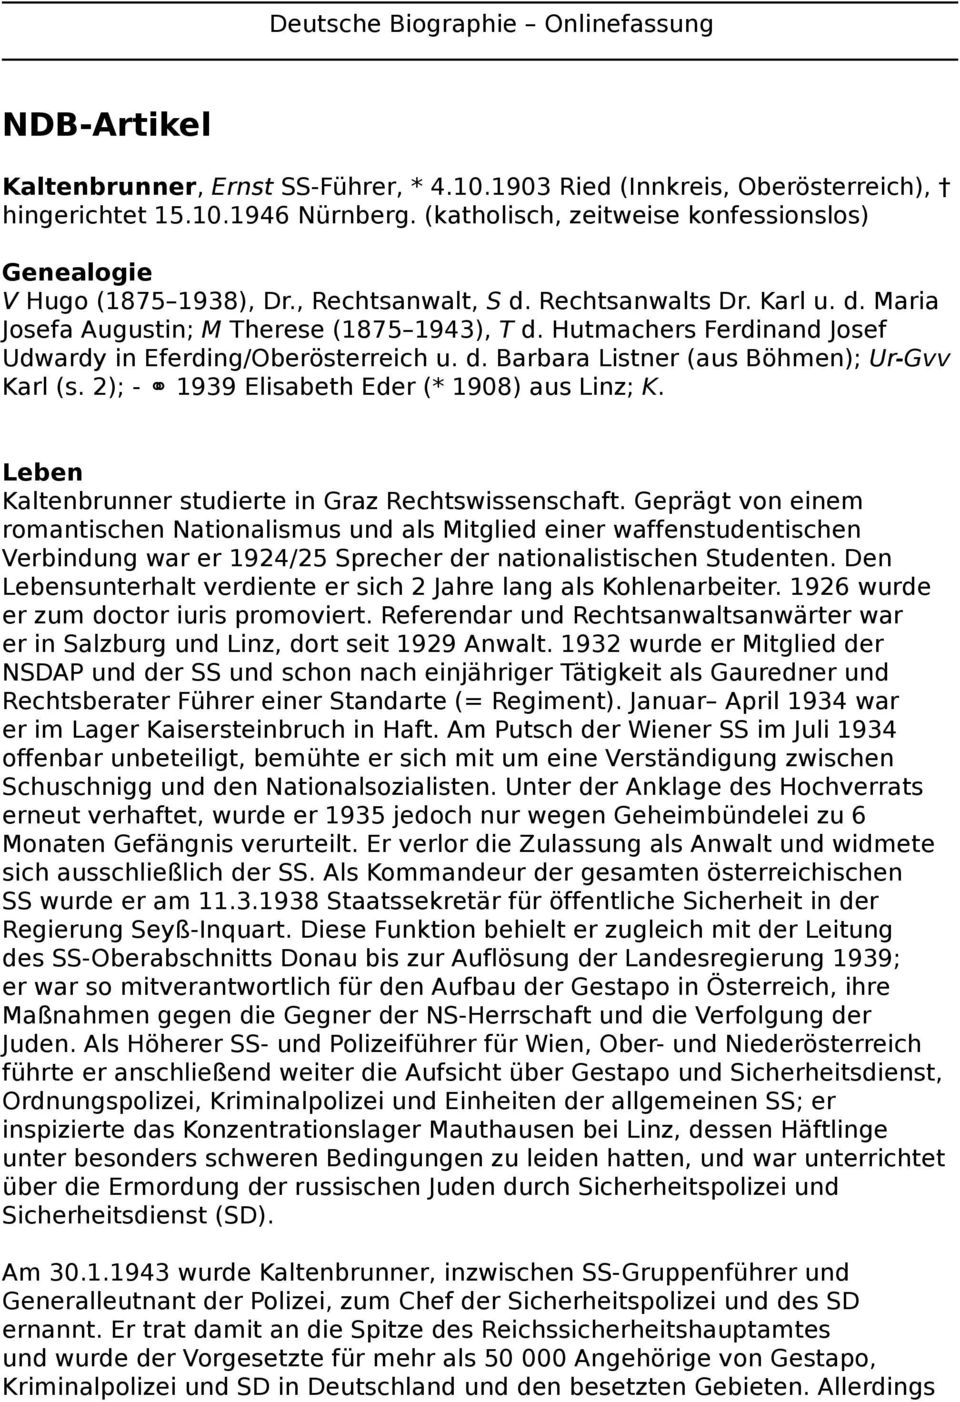 Hutmachers Ferdinand Josef Udwardy in Eferding/Oberösterreich u. d. Barbara Listner (aus Böhmen); Ur-Gvv Karl (s. 2); - 1939 Elisabeth Eder (* 1908) aus Linz; K.